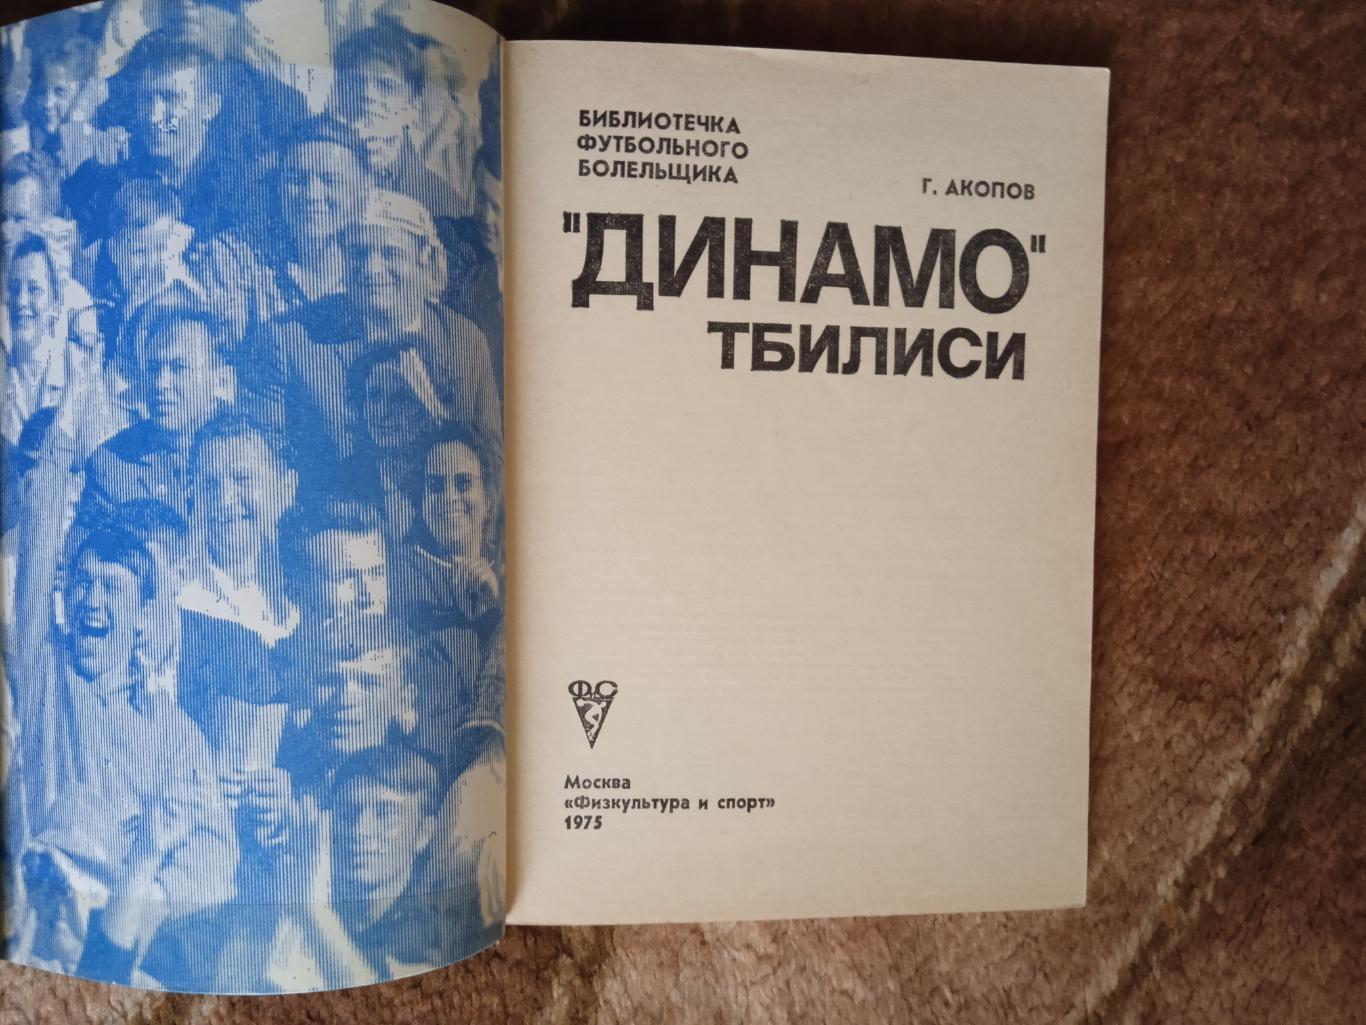 Динамо (Тбилиси,СССР).Библиотечка футбольного болельщика.ФиС 1975 г. 1